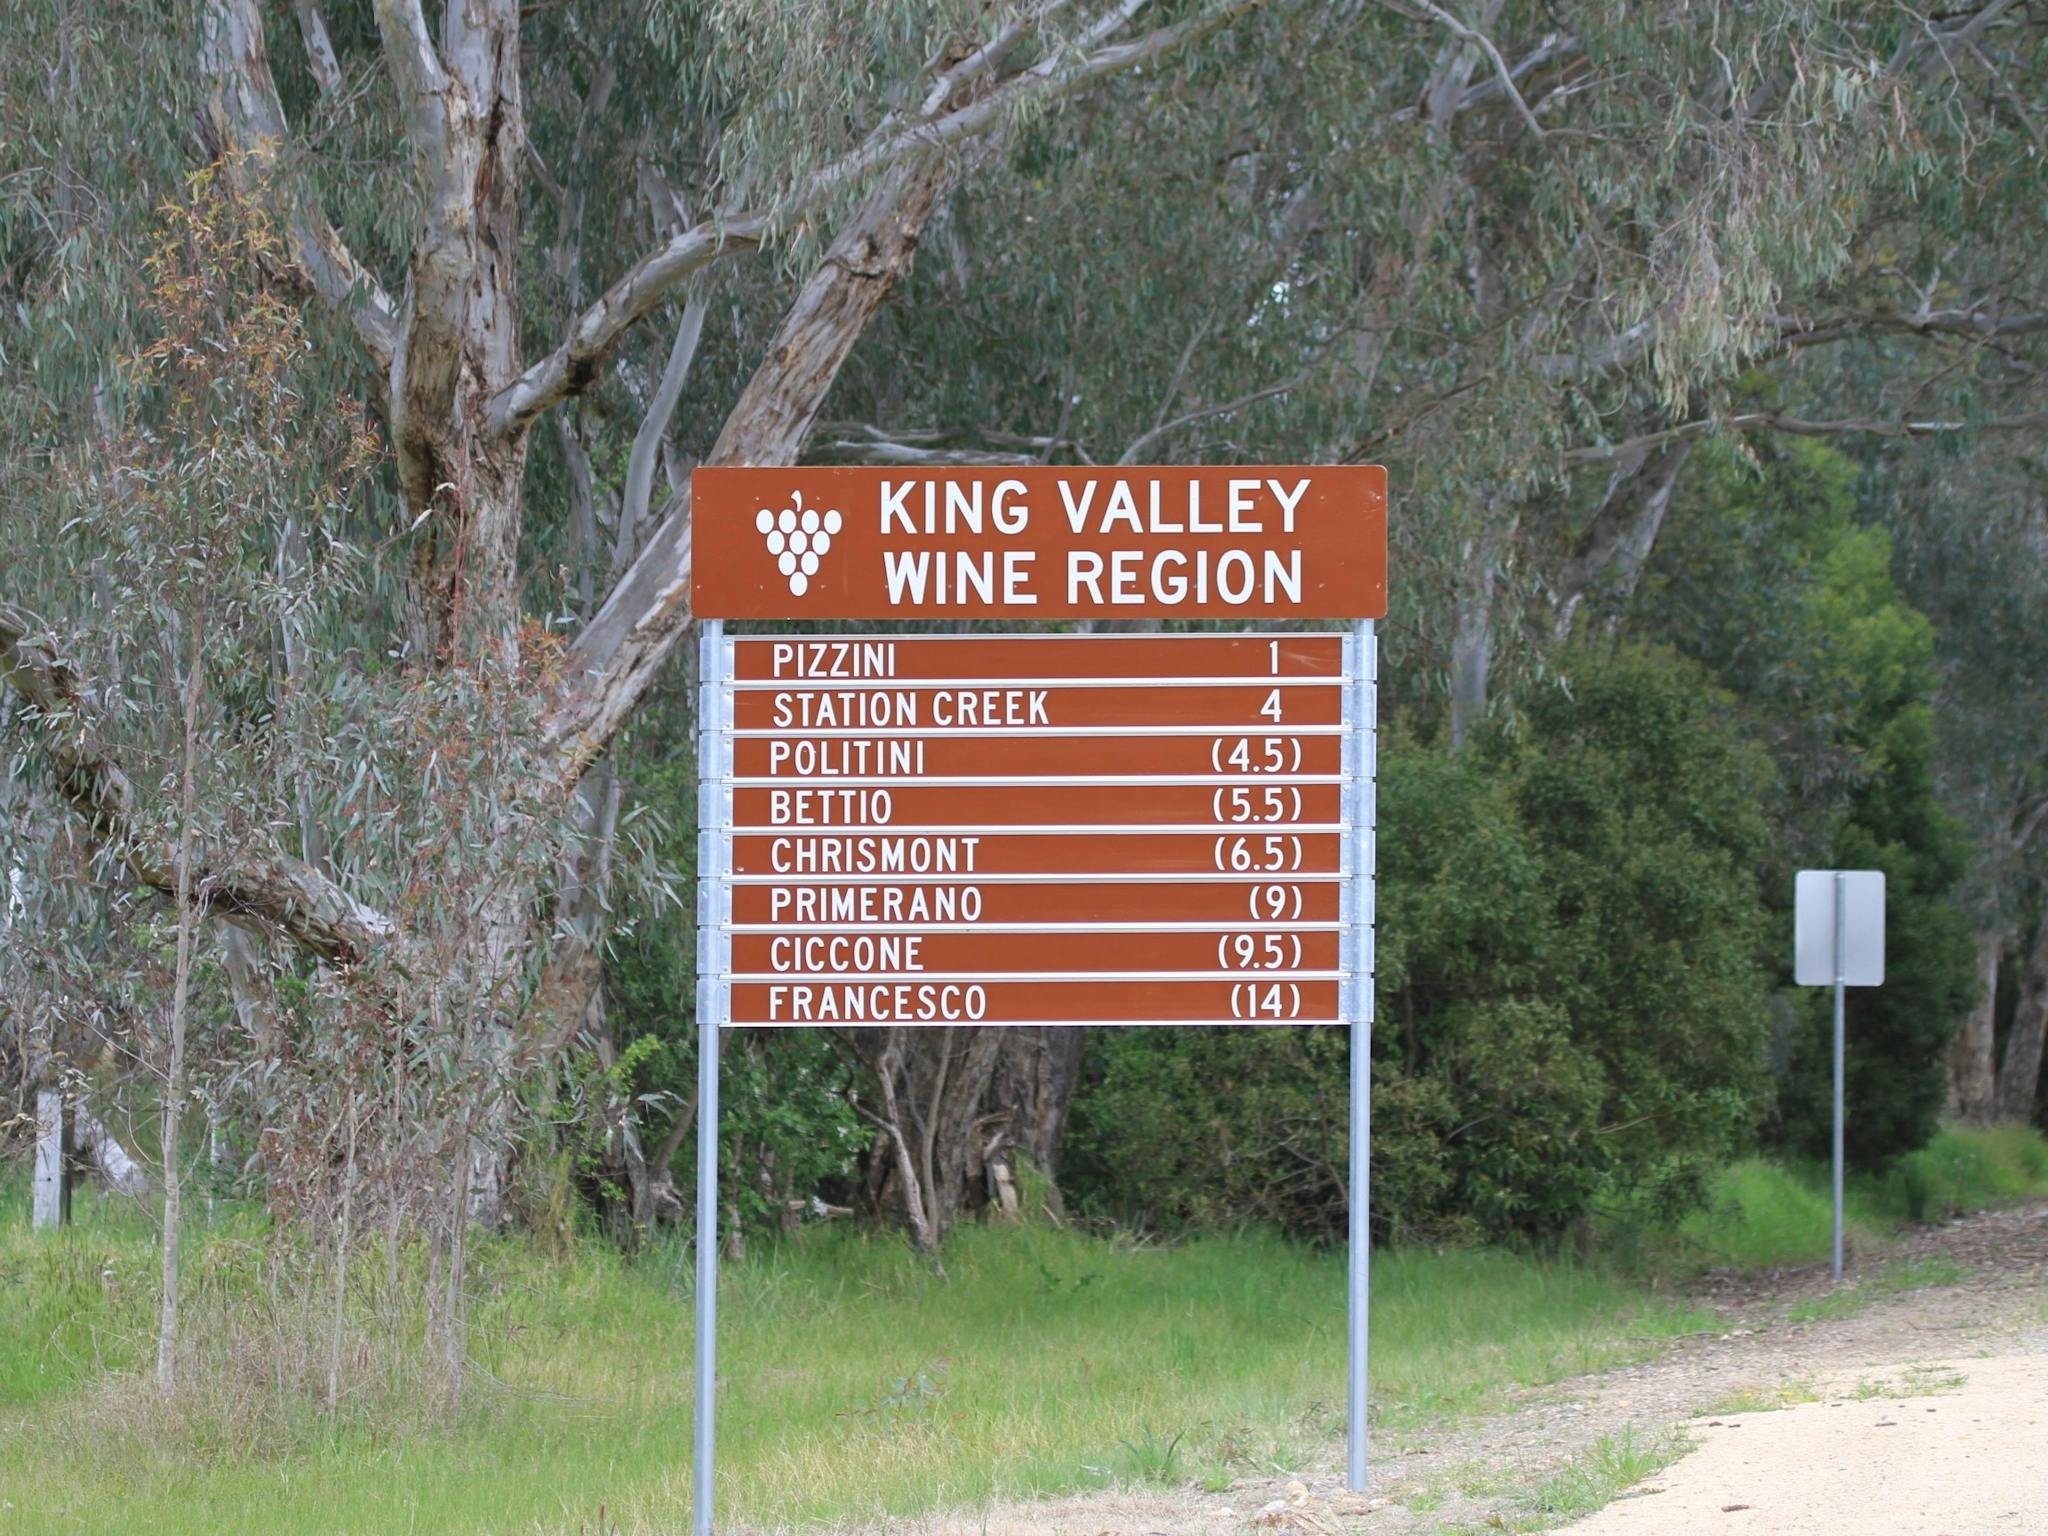 King Valley Wine Region